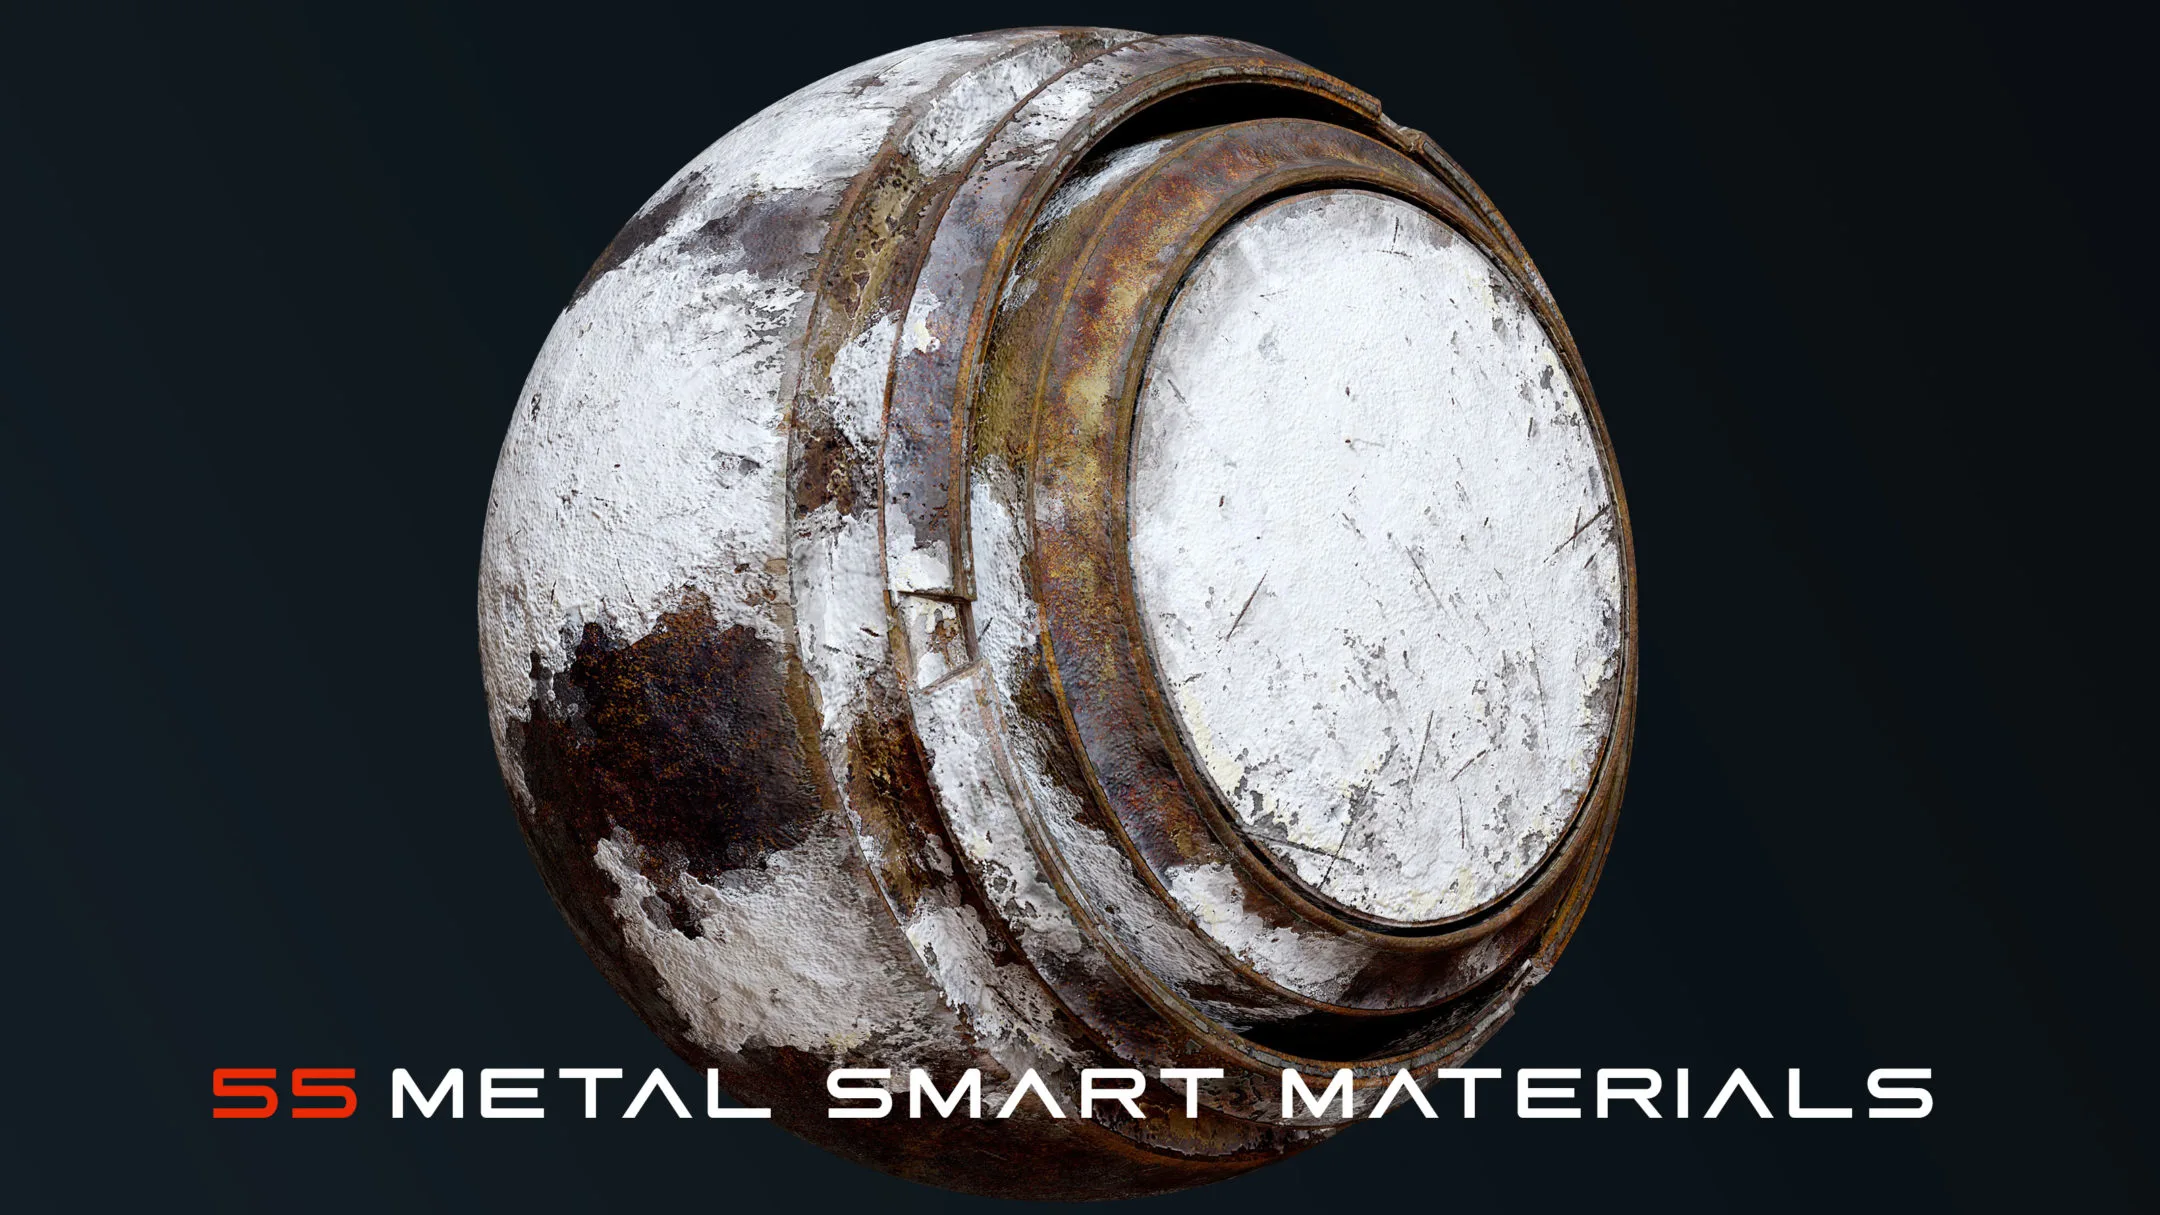 53 Metal Smart Materials (Substance Painter)